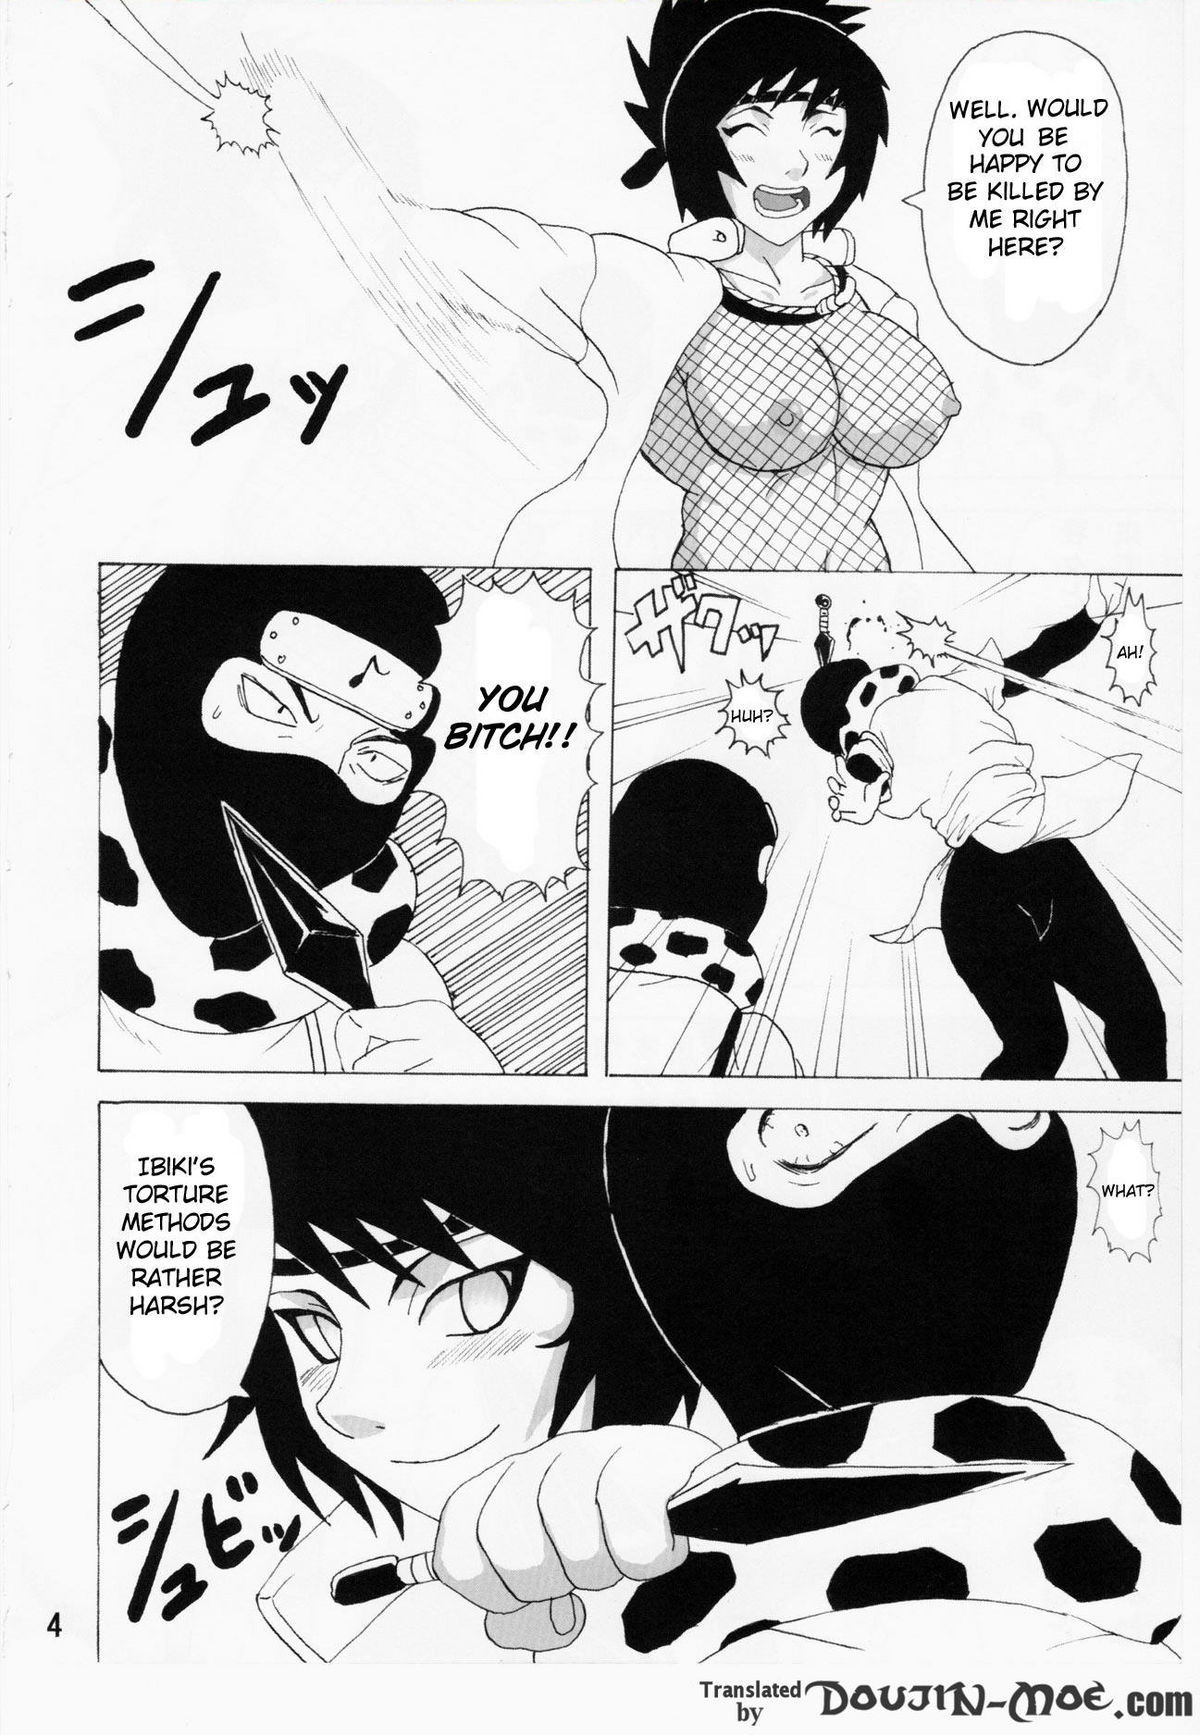 Mitarashi Anko Hon naruto 4 hentai manga